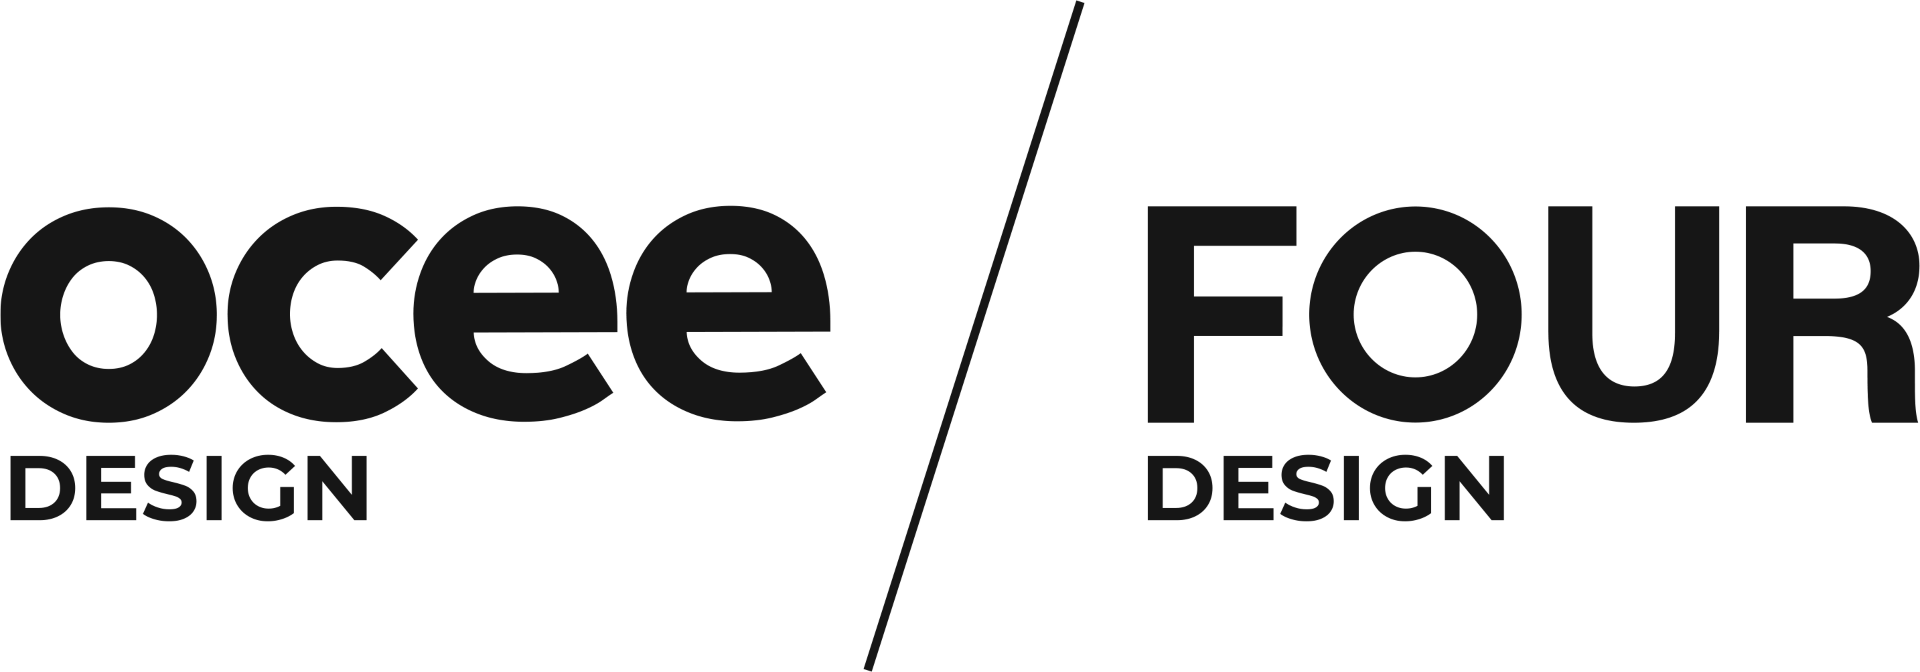 Ocee Design Four Design Logo